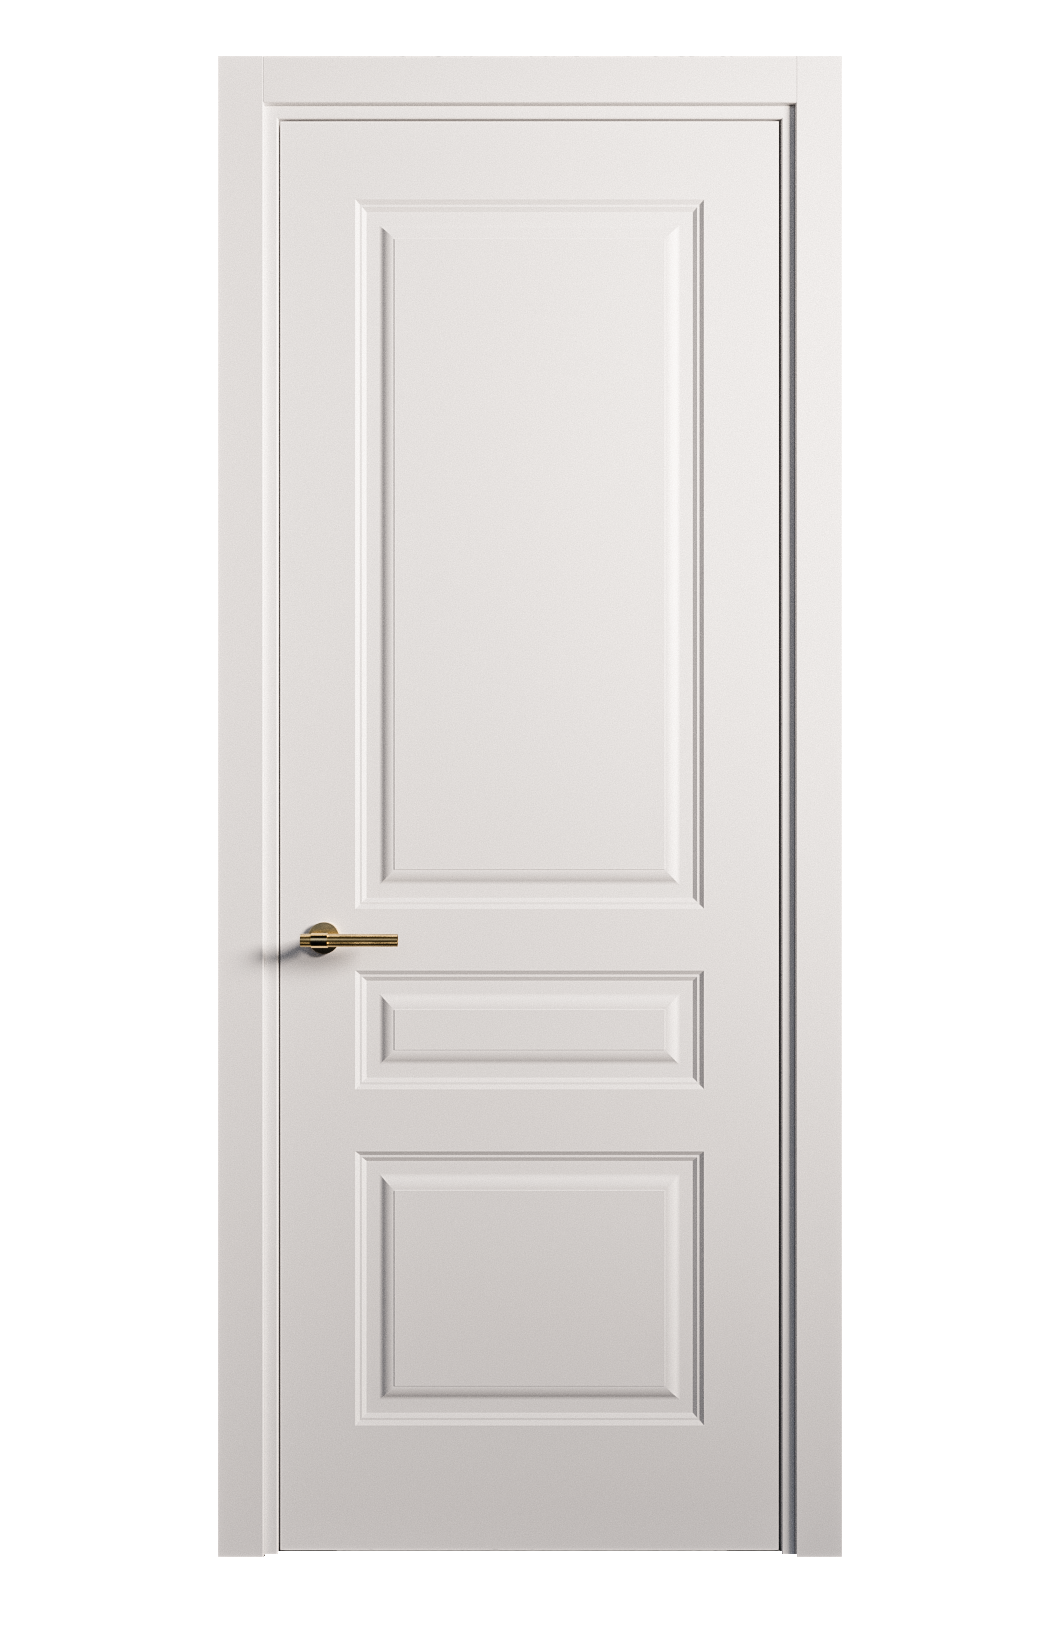 Межкомнатная дверь Вита-2 глухая эмаль ral 9003 26341